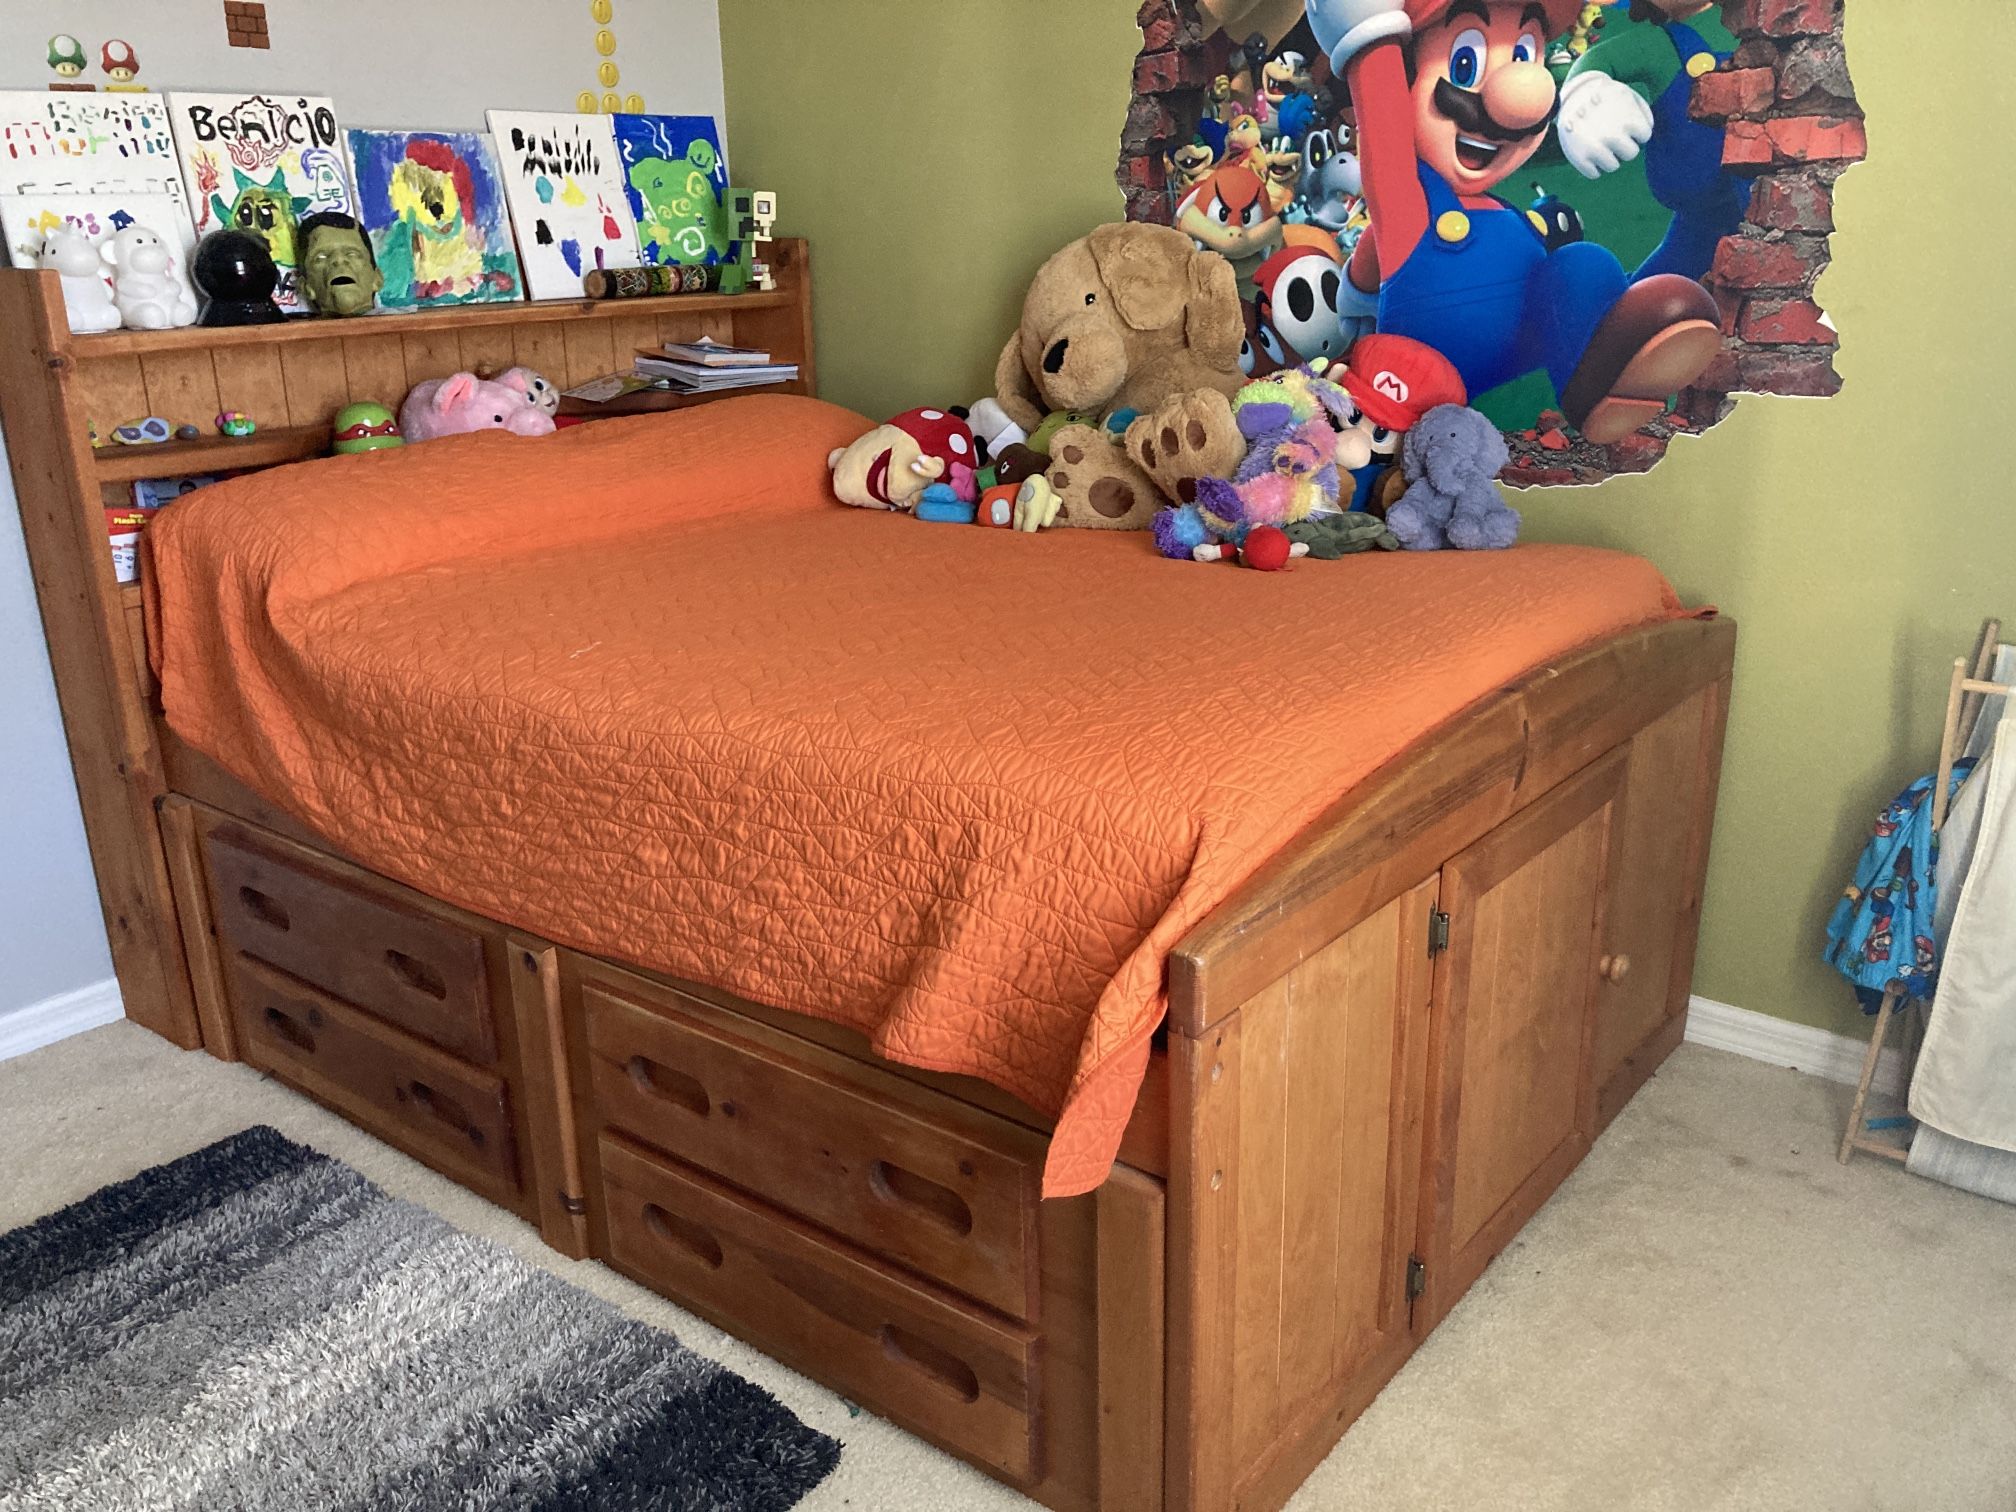 Full size wood bed w/ bookshelf headboard and 4 drawers